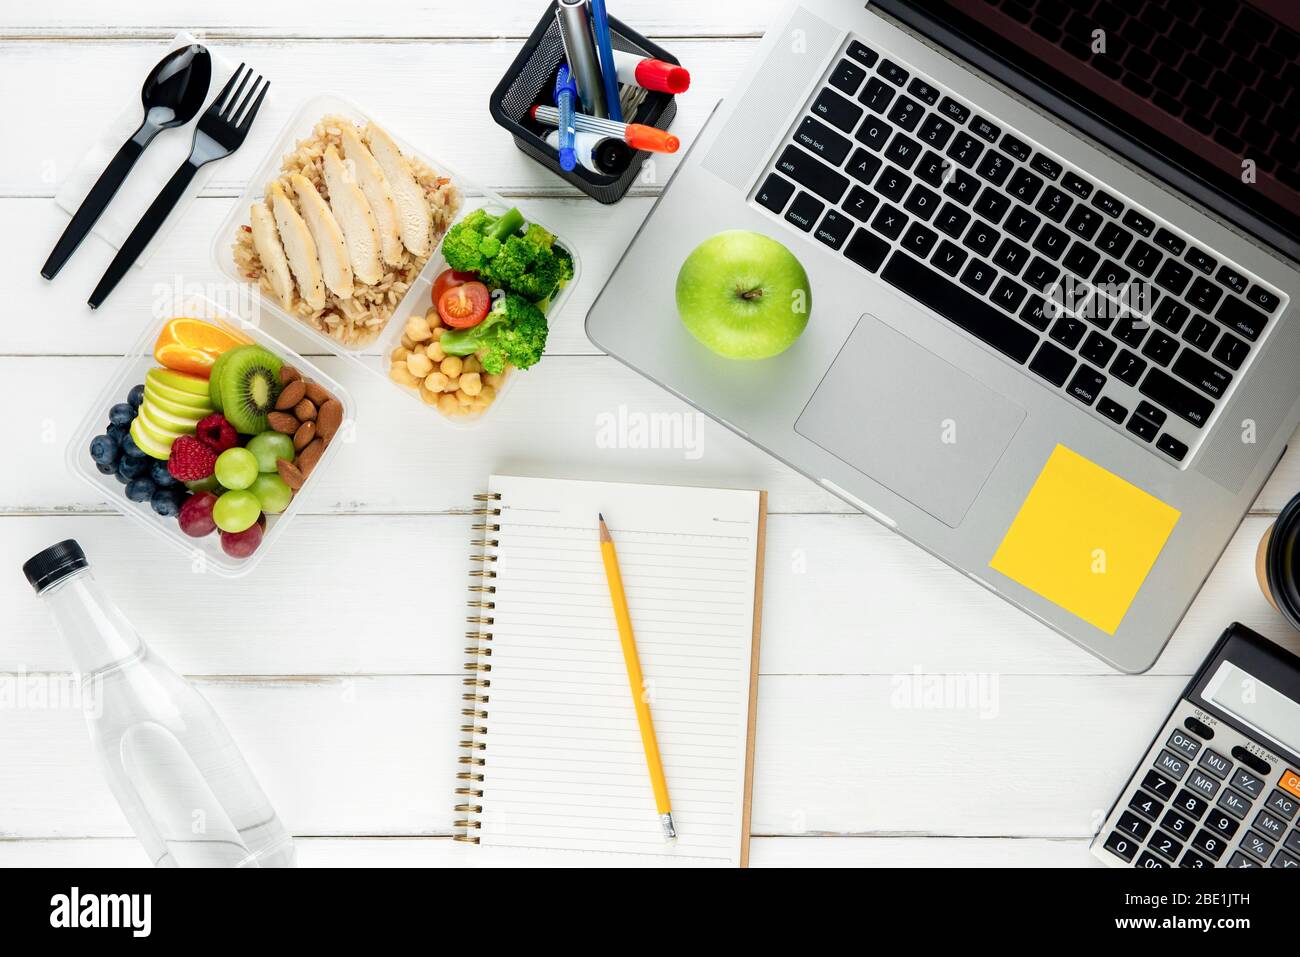 Portate via cibo ricco di nutrienti con computer portatile e attrezzature sul tavolo preparate per lavorare da casa Foto Stock